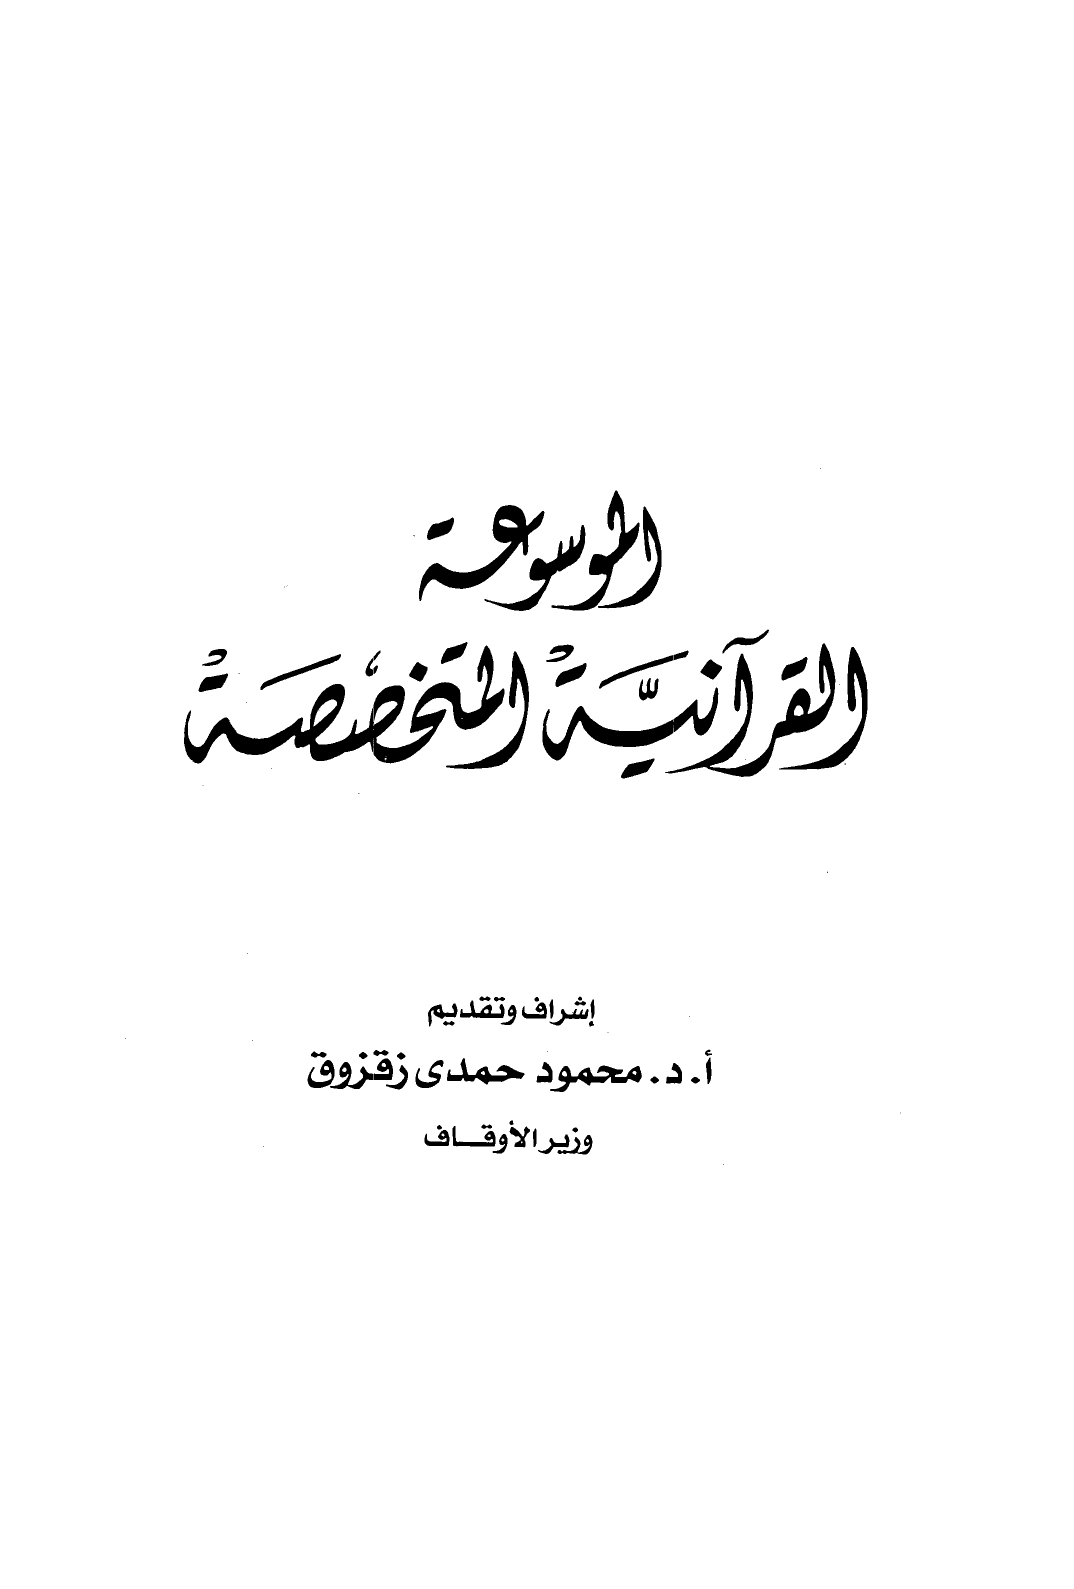 الموسوعة القرآنية المتخصصة -